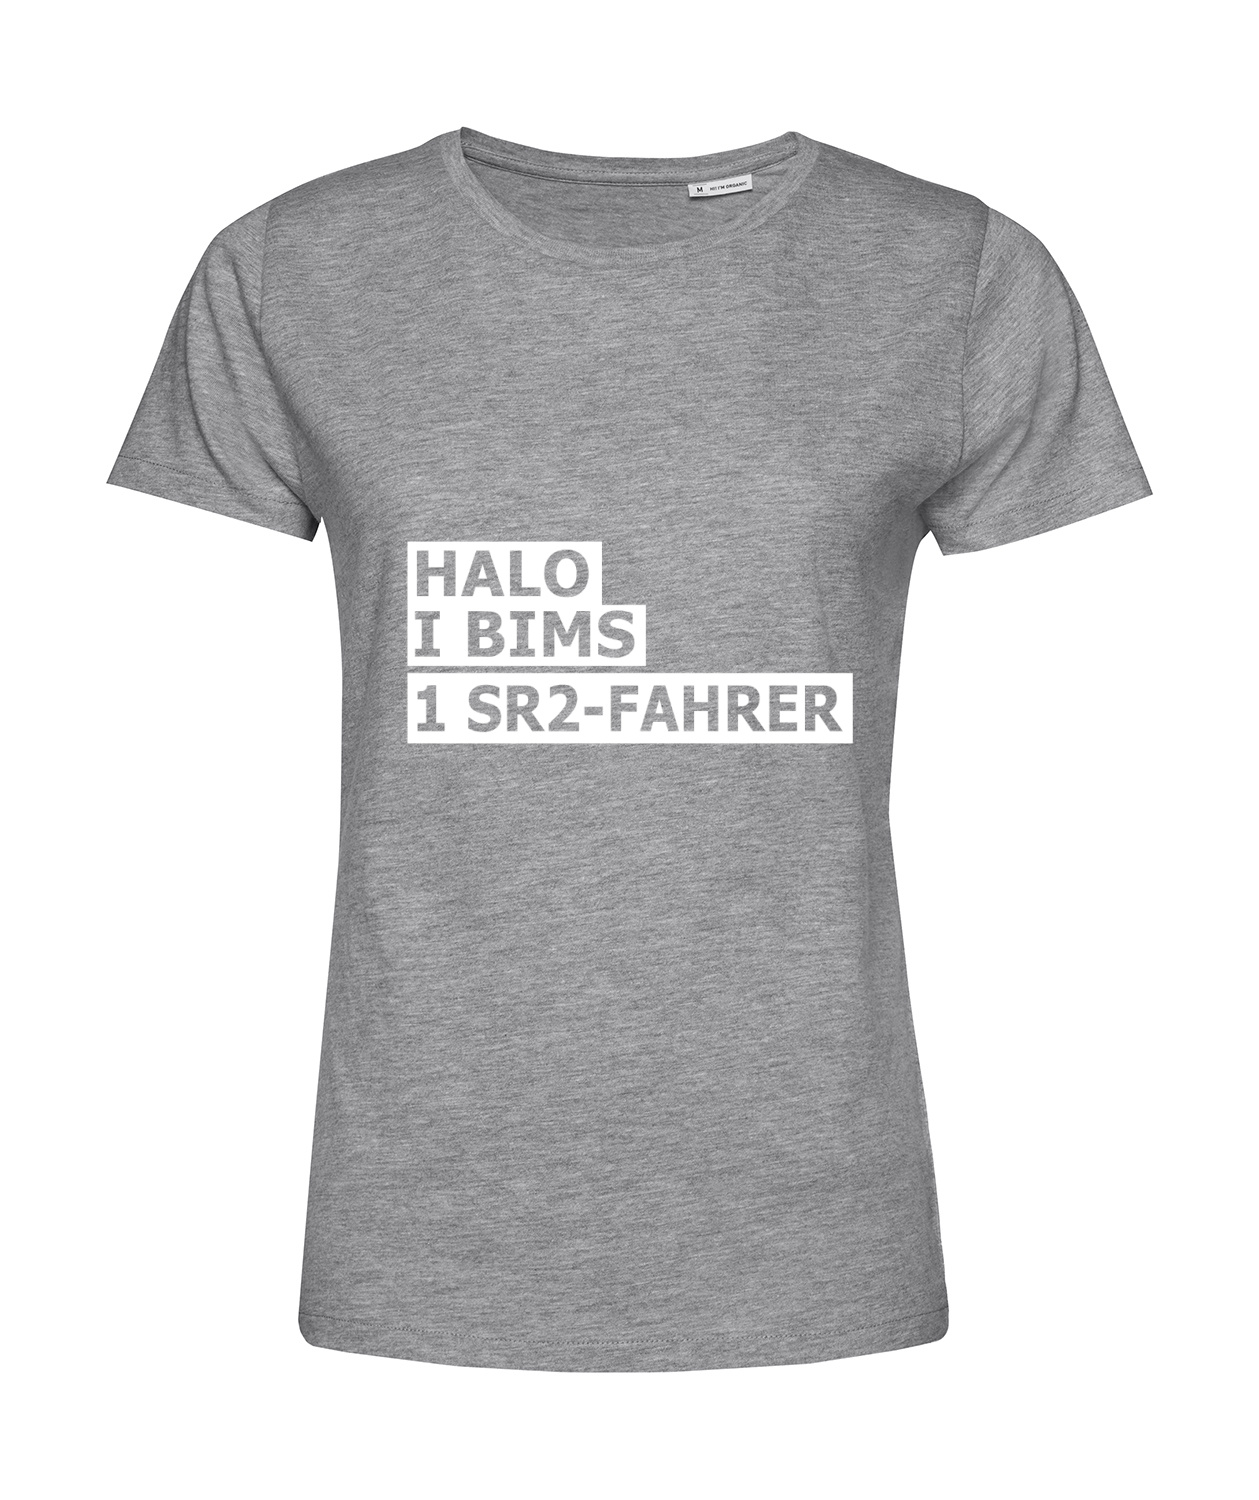 Nachhaltiges T-Shirt Damen 2Takter - Halo I bims 1 SR2-Fahrer